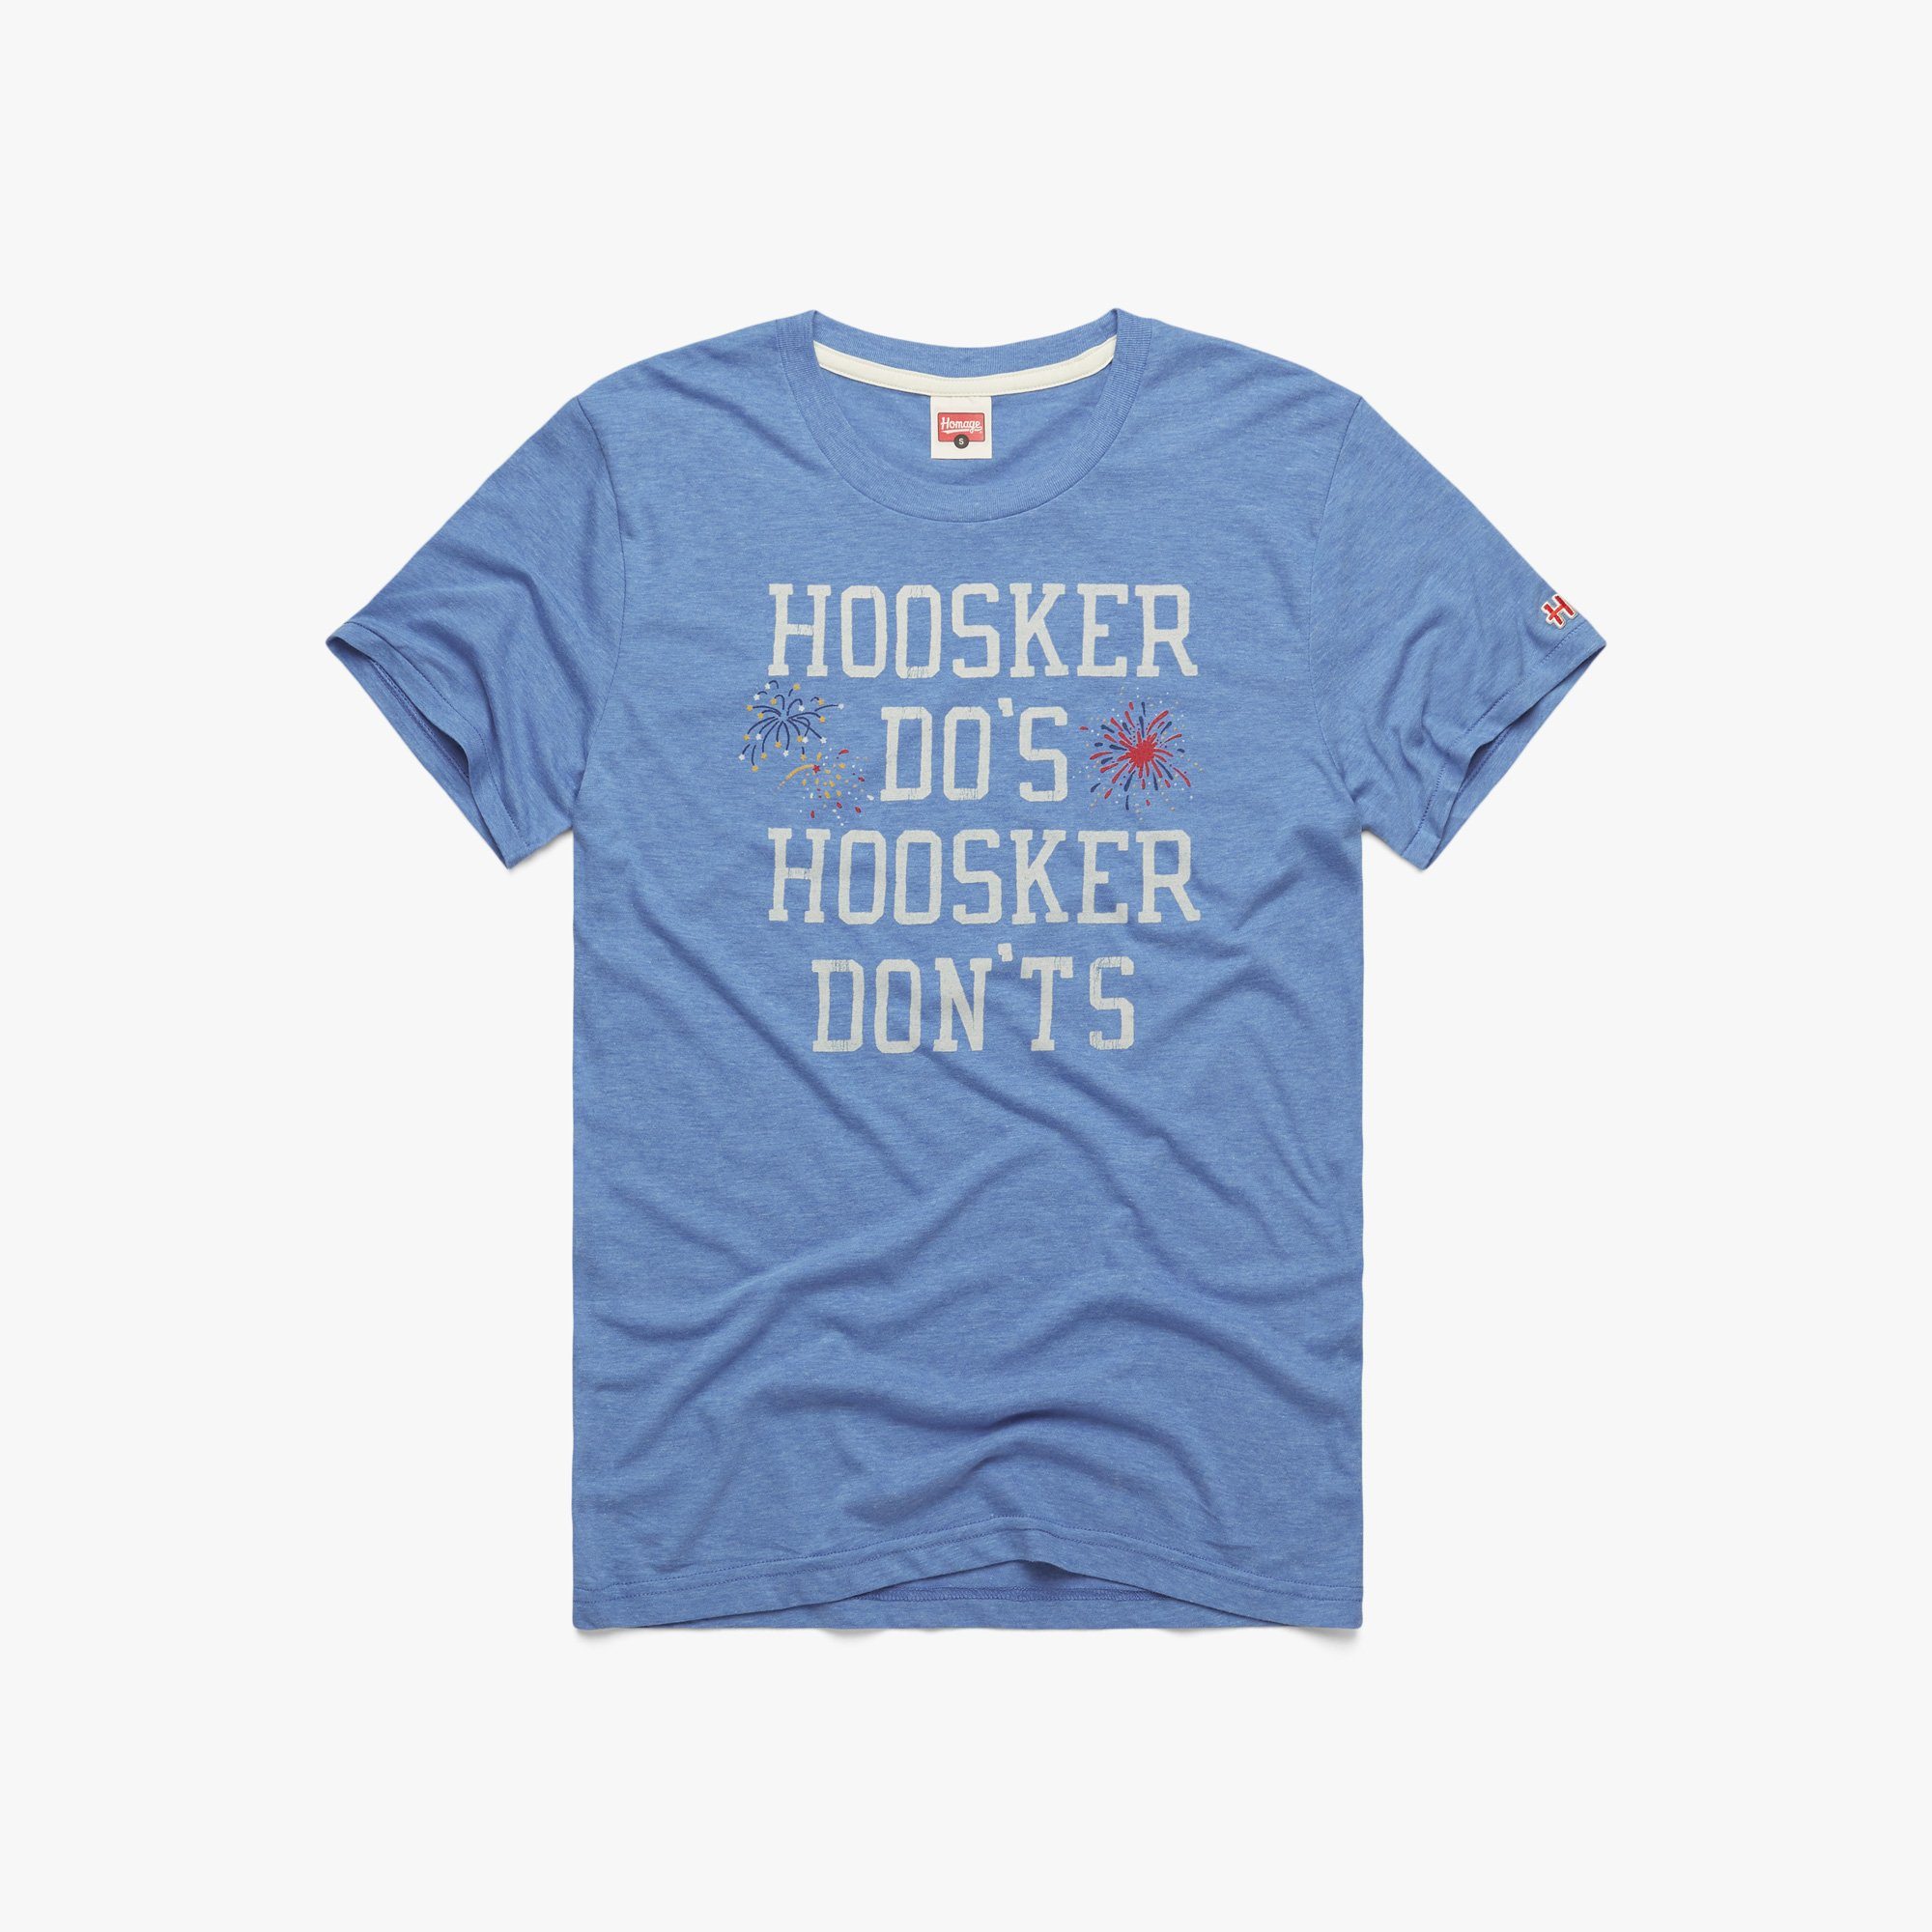 Image of Hoosker Dos Hoosker Don'ts